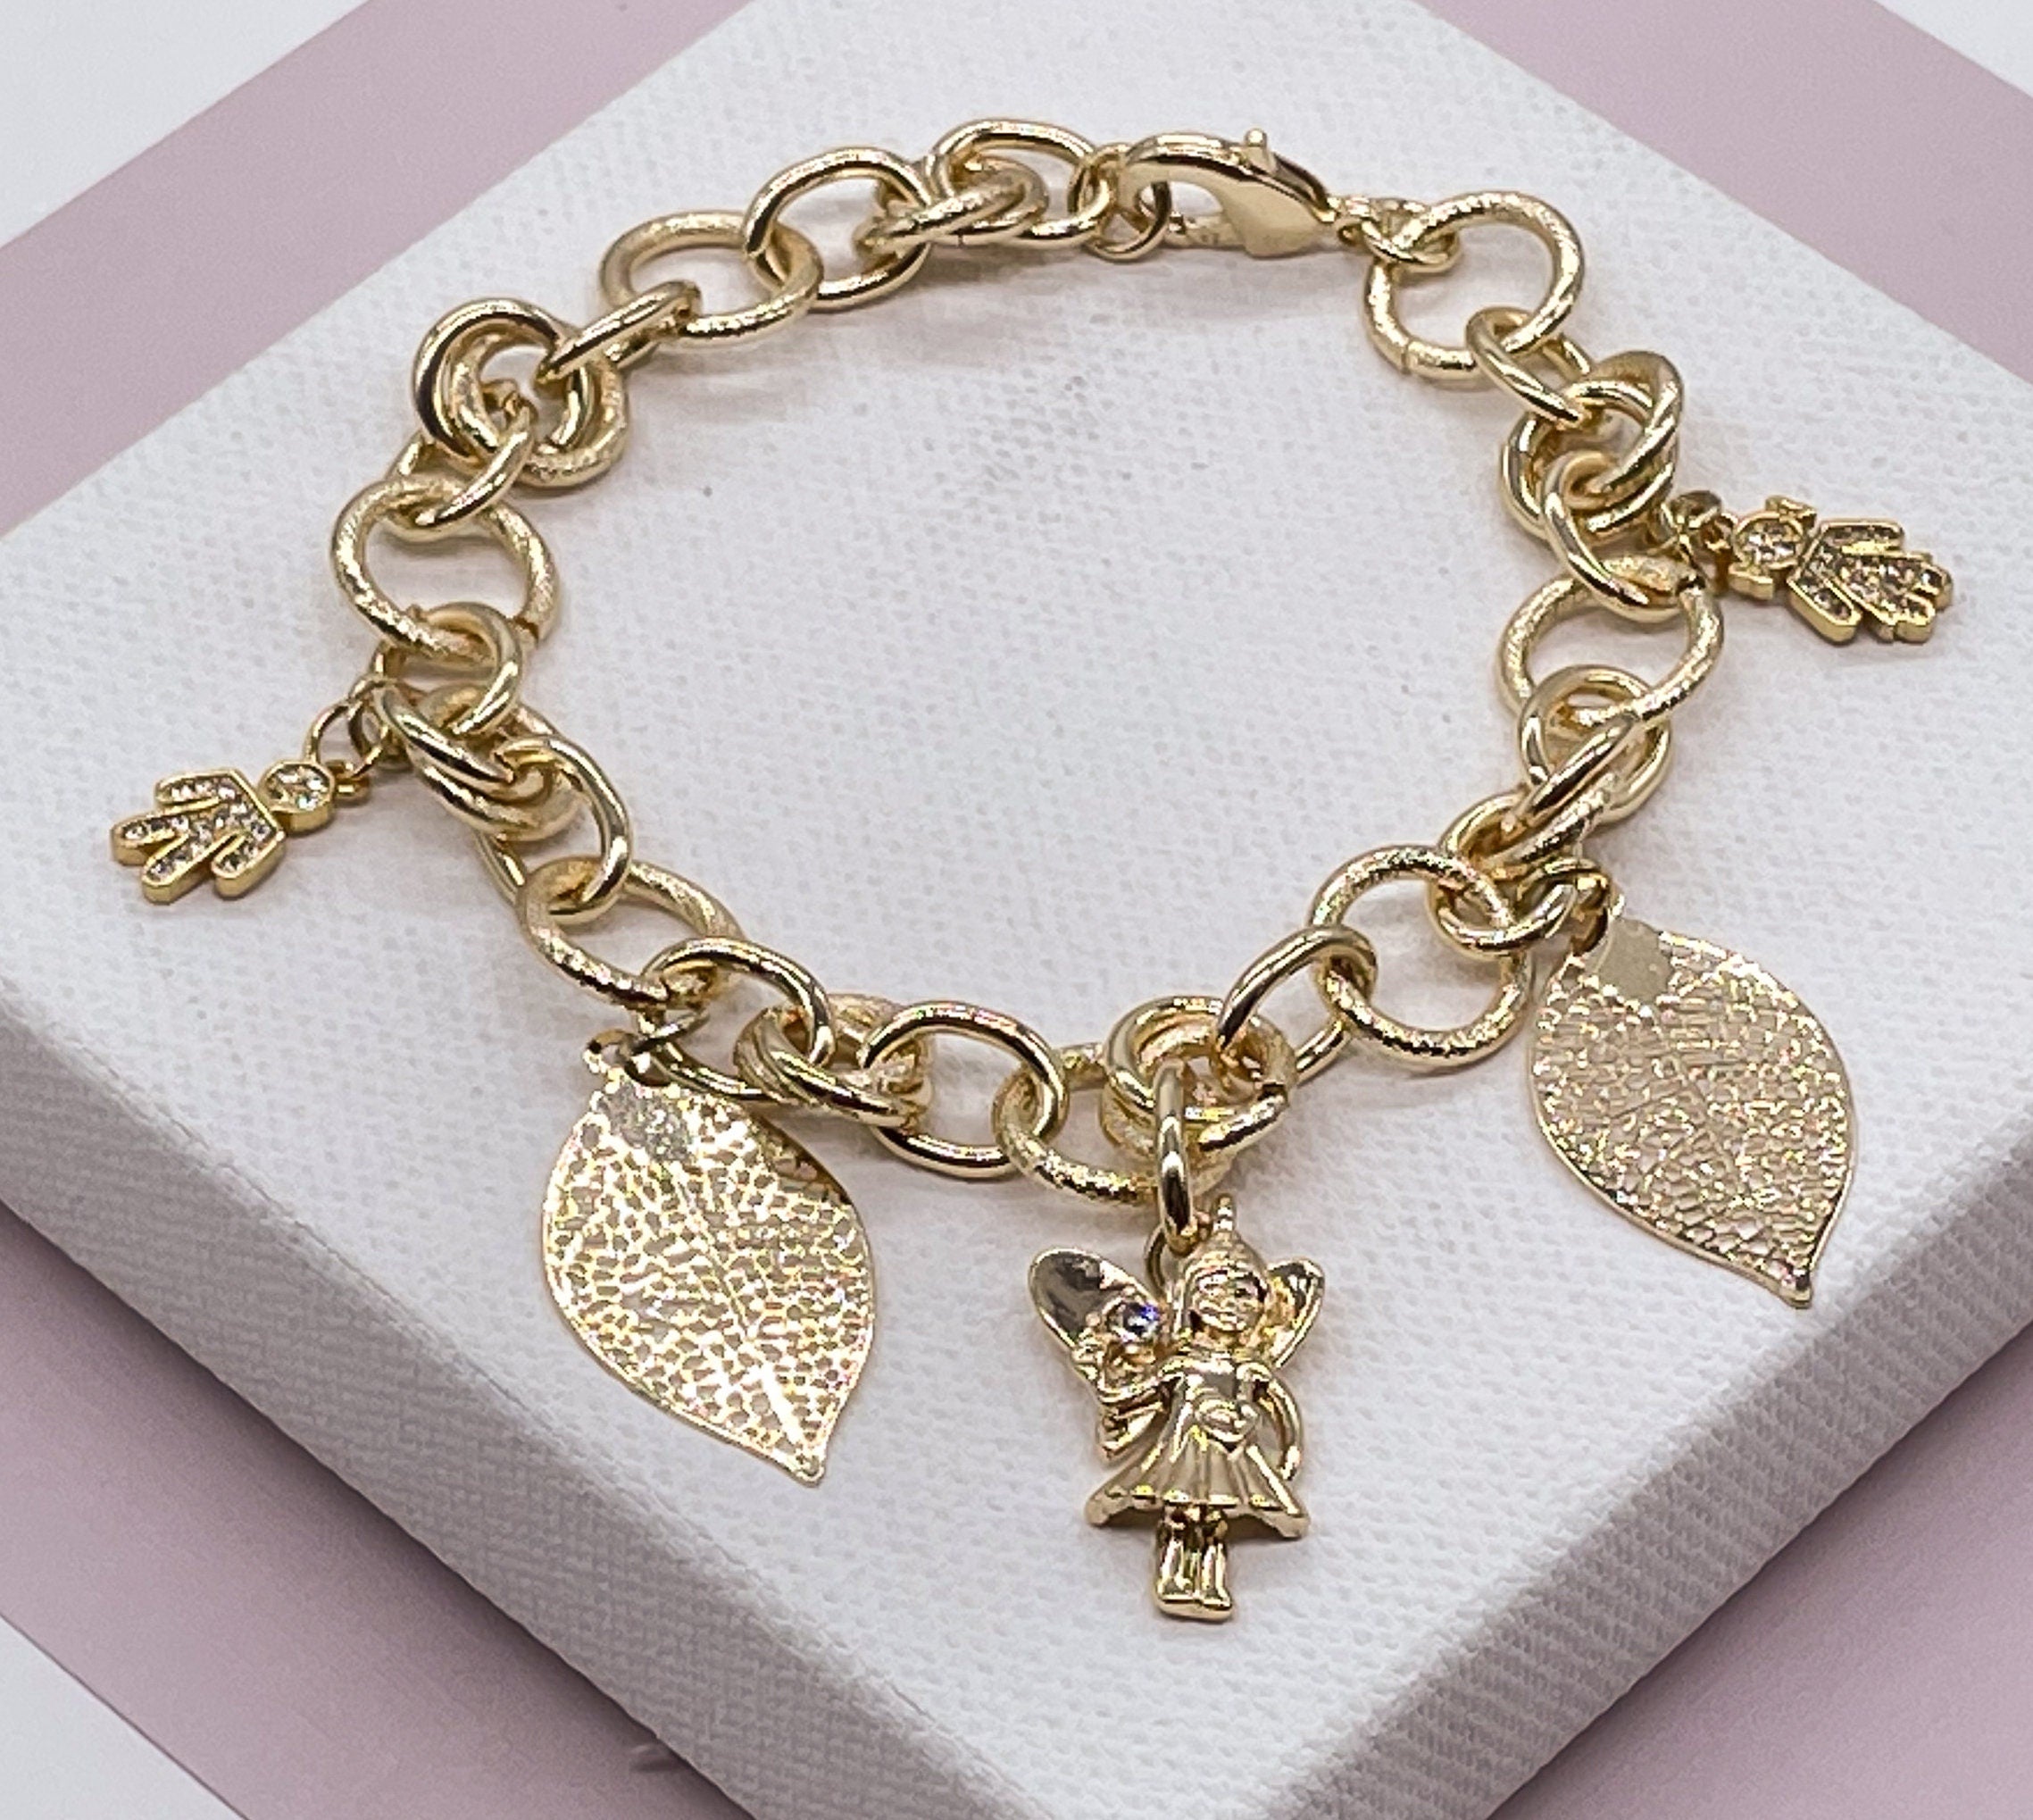 Heart Bracelet, Big Gold Bracelet, Chunky Chain Bracelet, Retro Aesthetic  Bracelet, Oversized Heart Bracelet, Large Heart Charm Bracelet - Etsy |  Heart bracelet, Bracelets, Chain bracelet